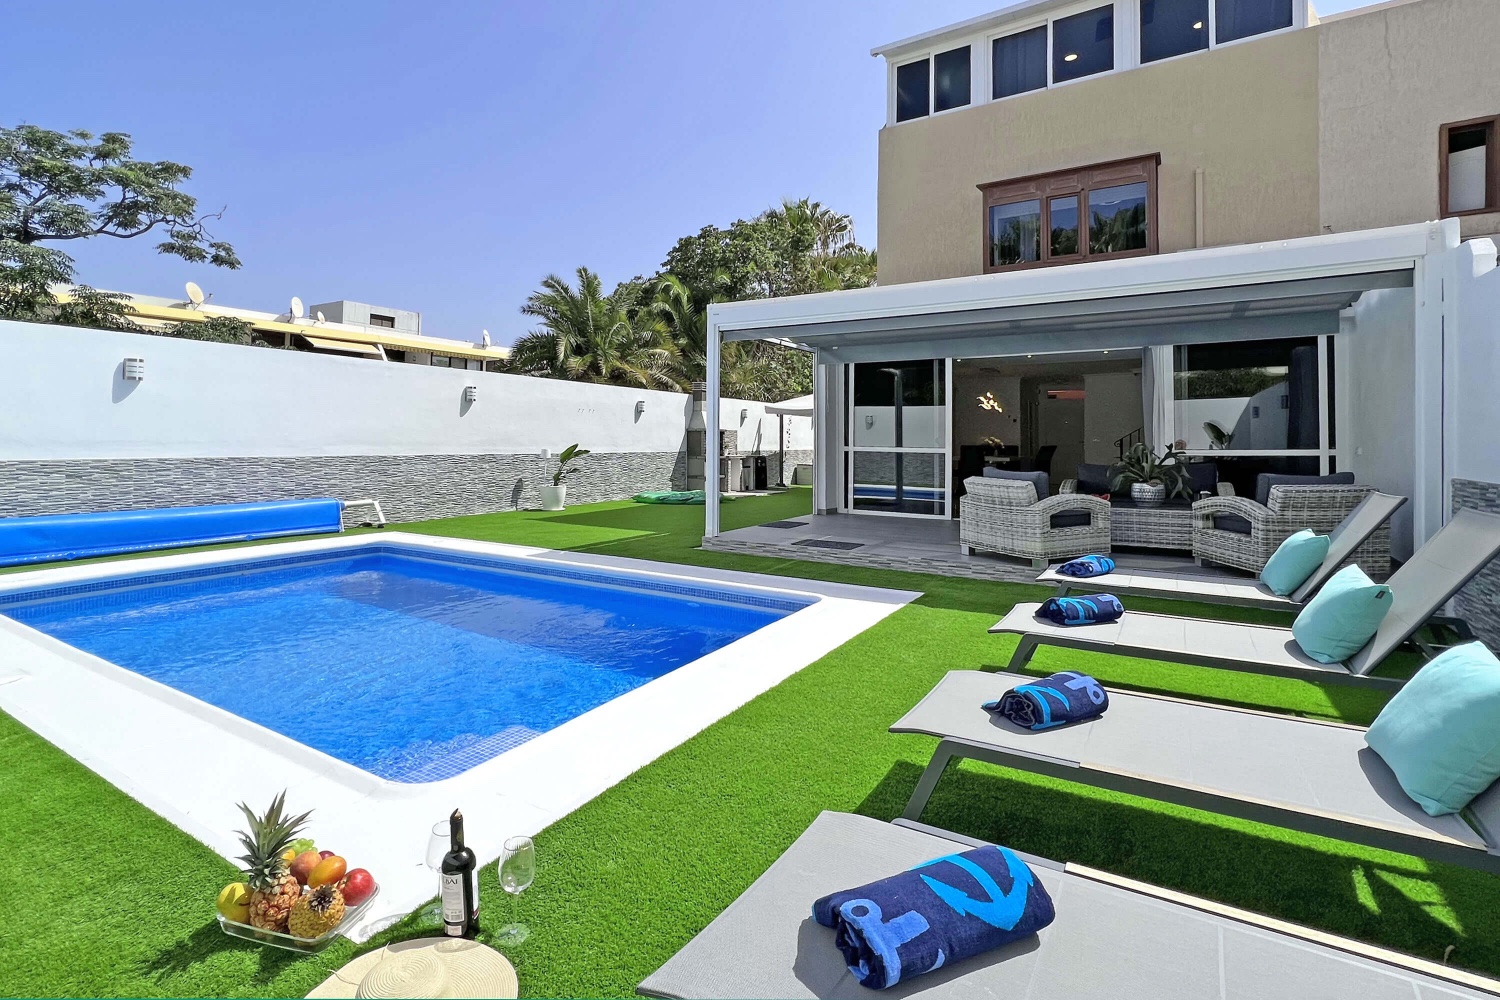 Skvělý a moderní rekreační dům jen 50 metrů od moře, s vlastním bazénem, ​​grilem a soukromou garáží.